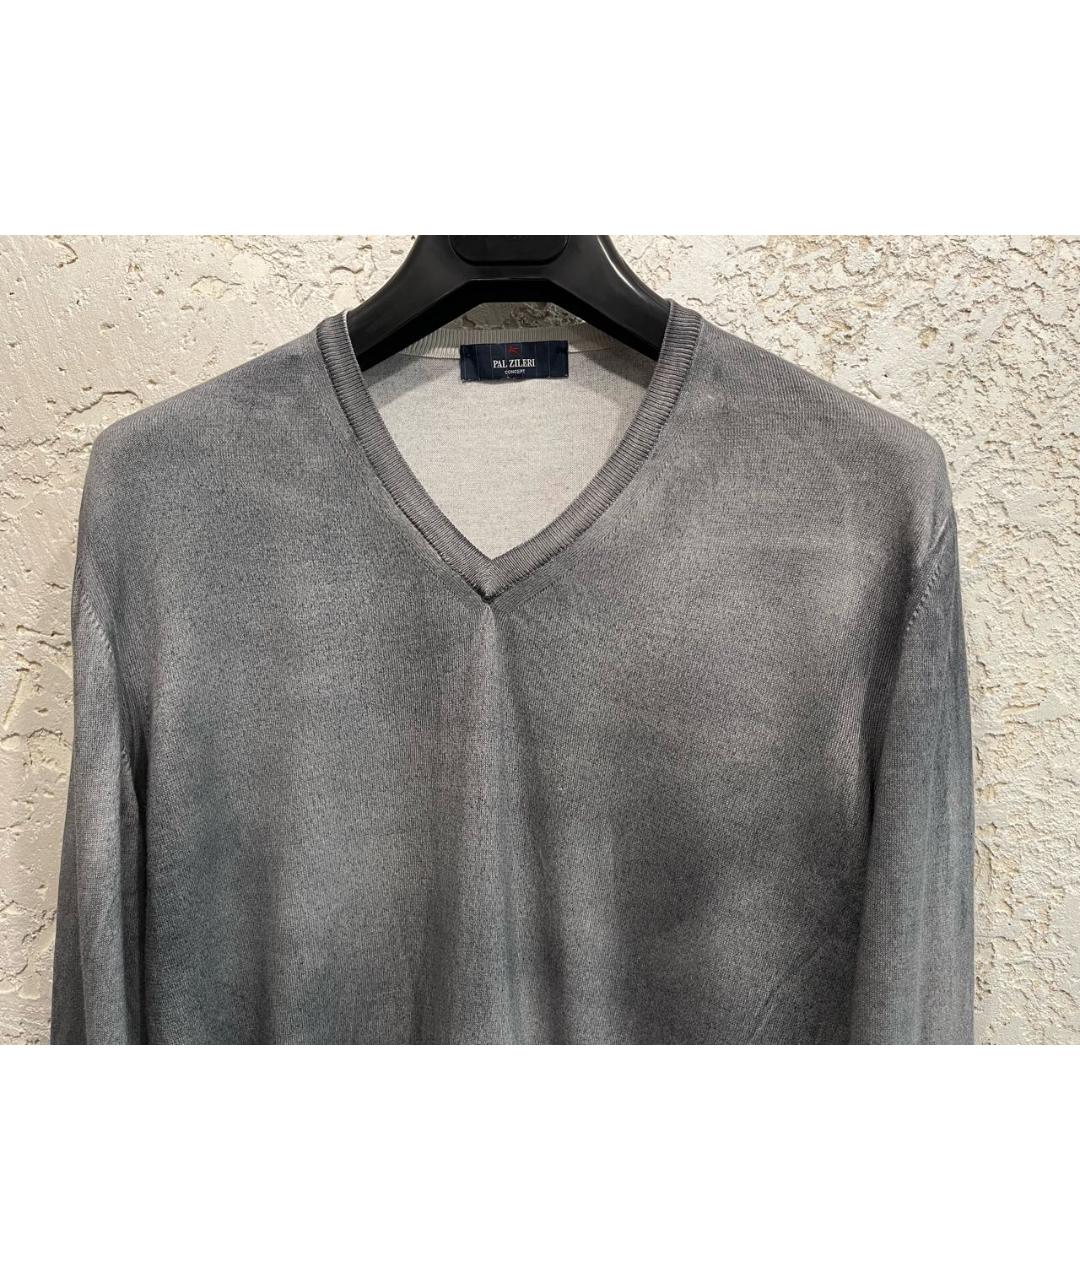 PAL ZILERI Серый хлопковый джемпер / свитер, фото 2